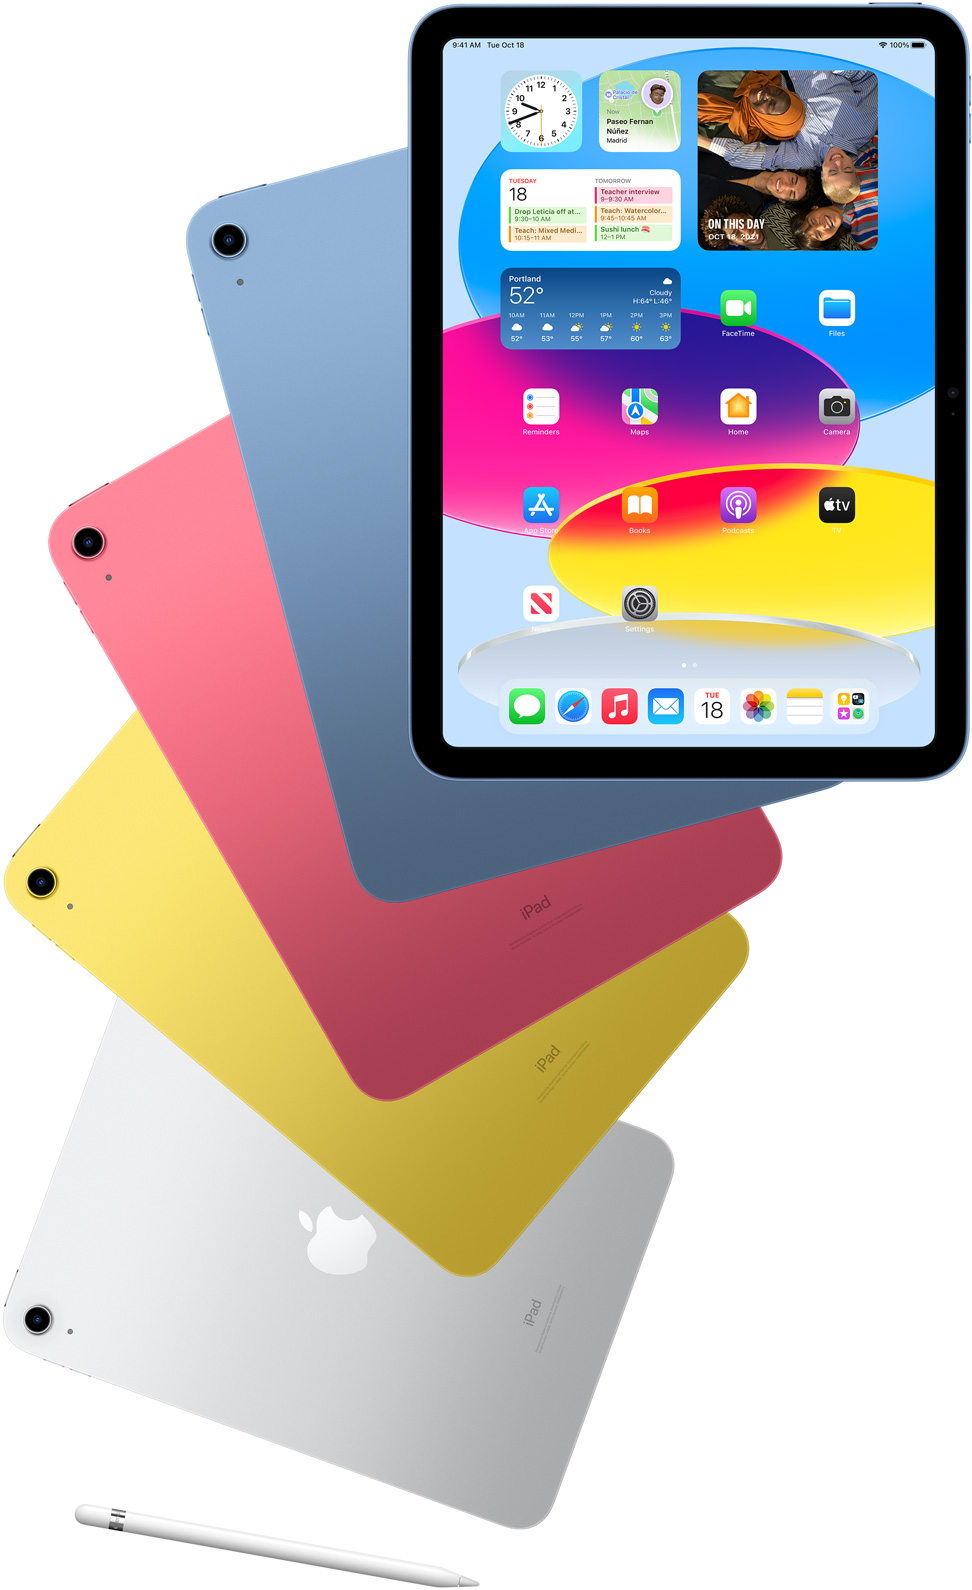 IPad ở mặt trước hiển thị màn hình chính với các iPad phía sau màu xanh lam, hồng, vàng và bạc.  Một Apple Pencil nằm gần các mẫu iPad được sắp xếp.